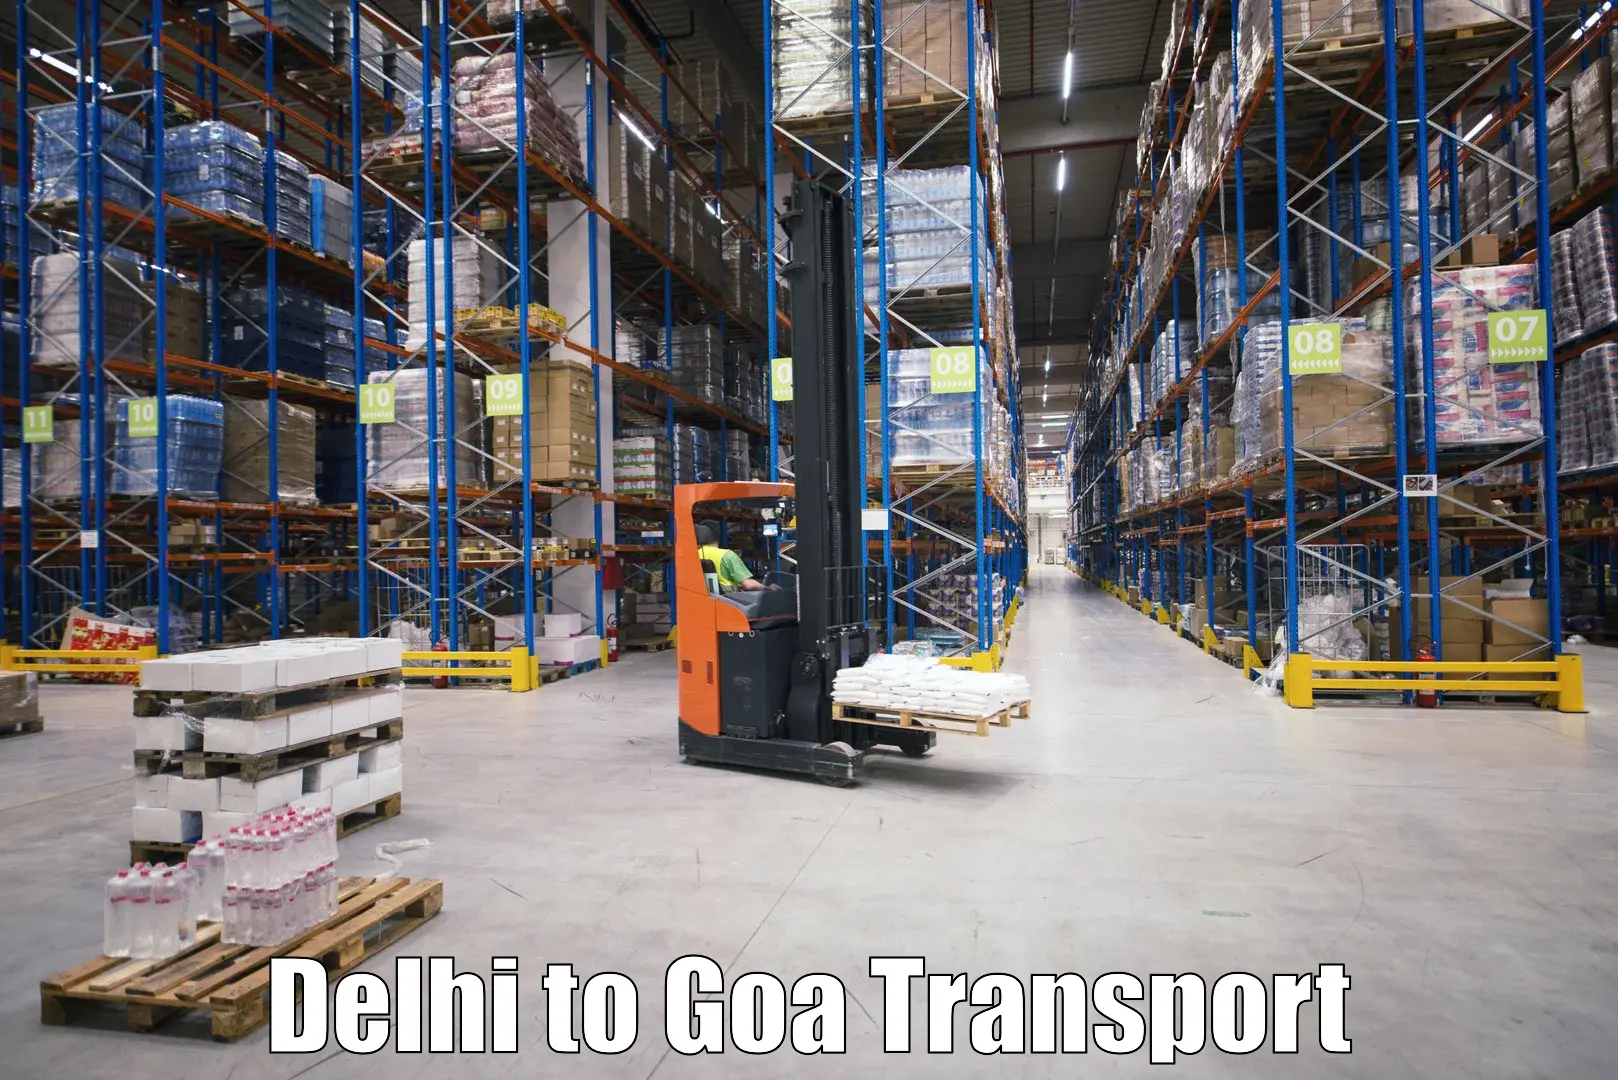 Nearby transport service Delhi to Canacona